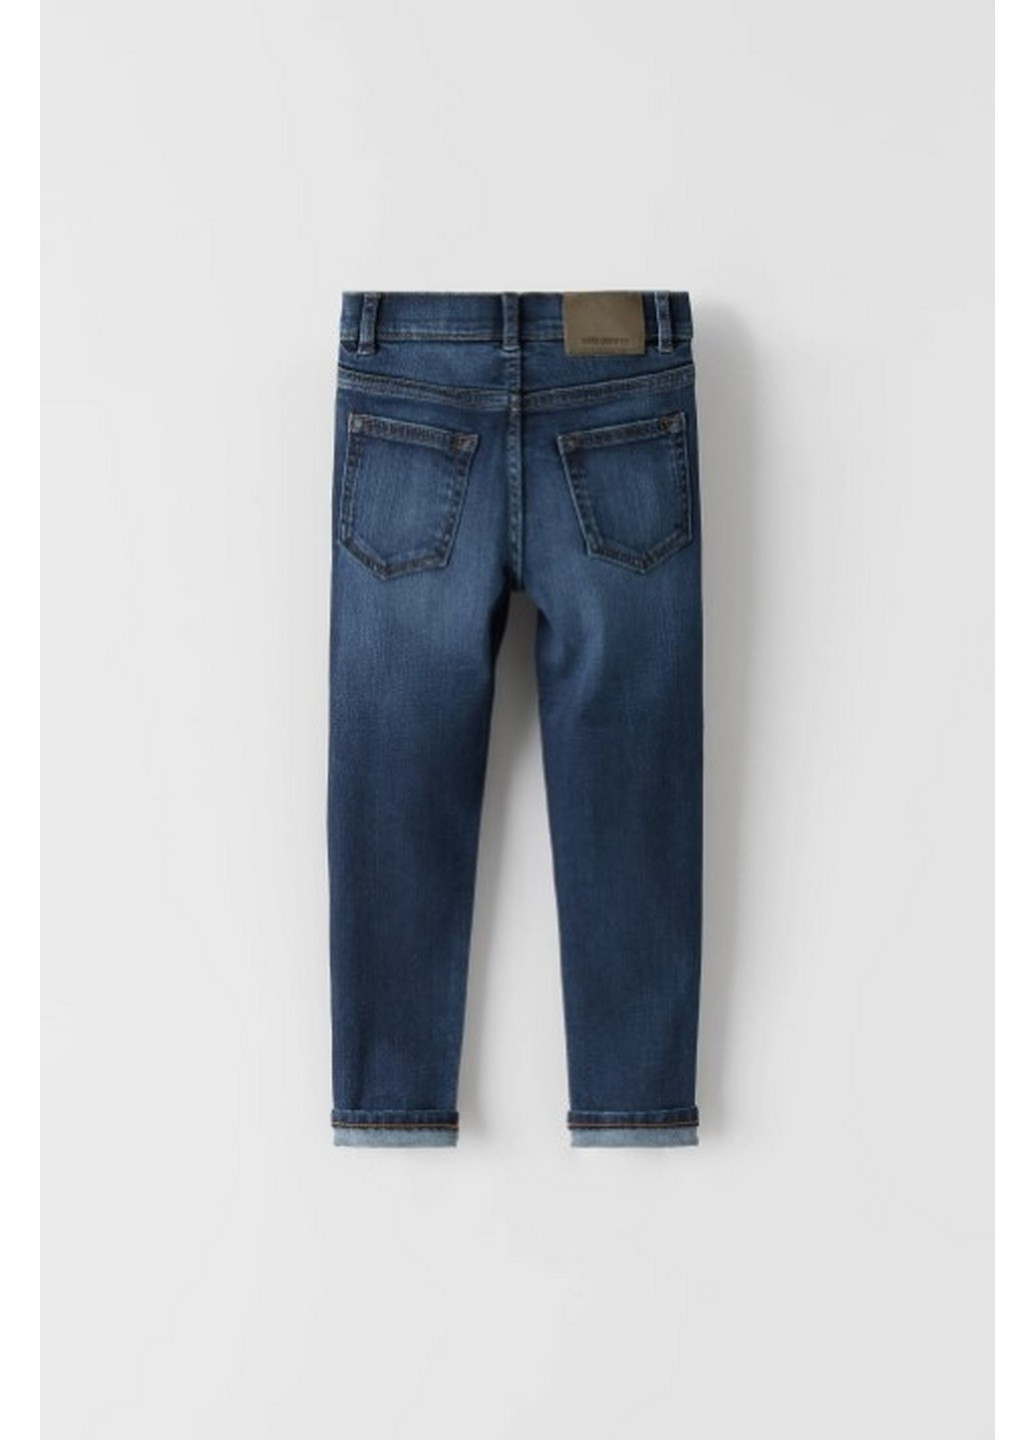 Синие демисезонные джинсы на мальчика Zara